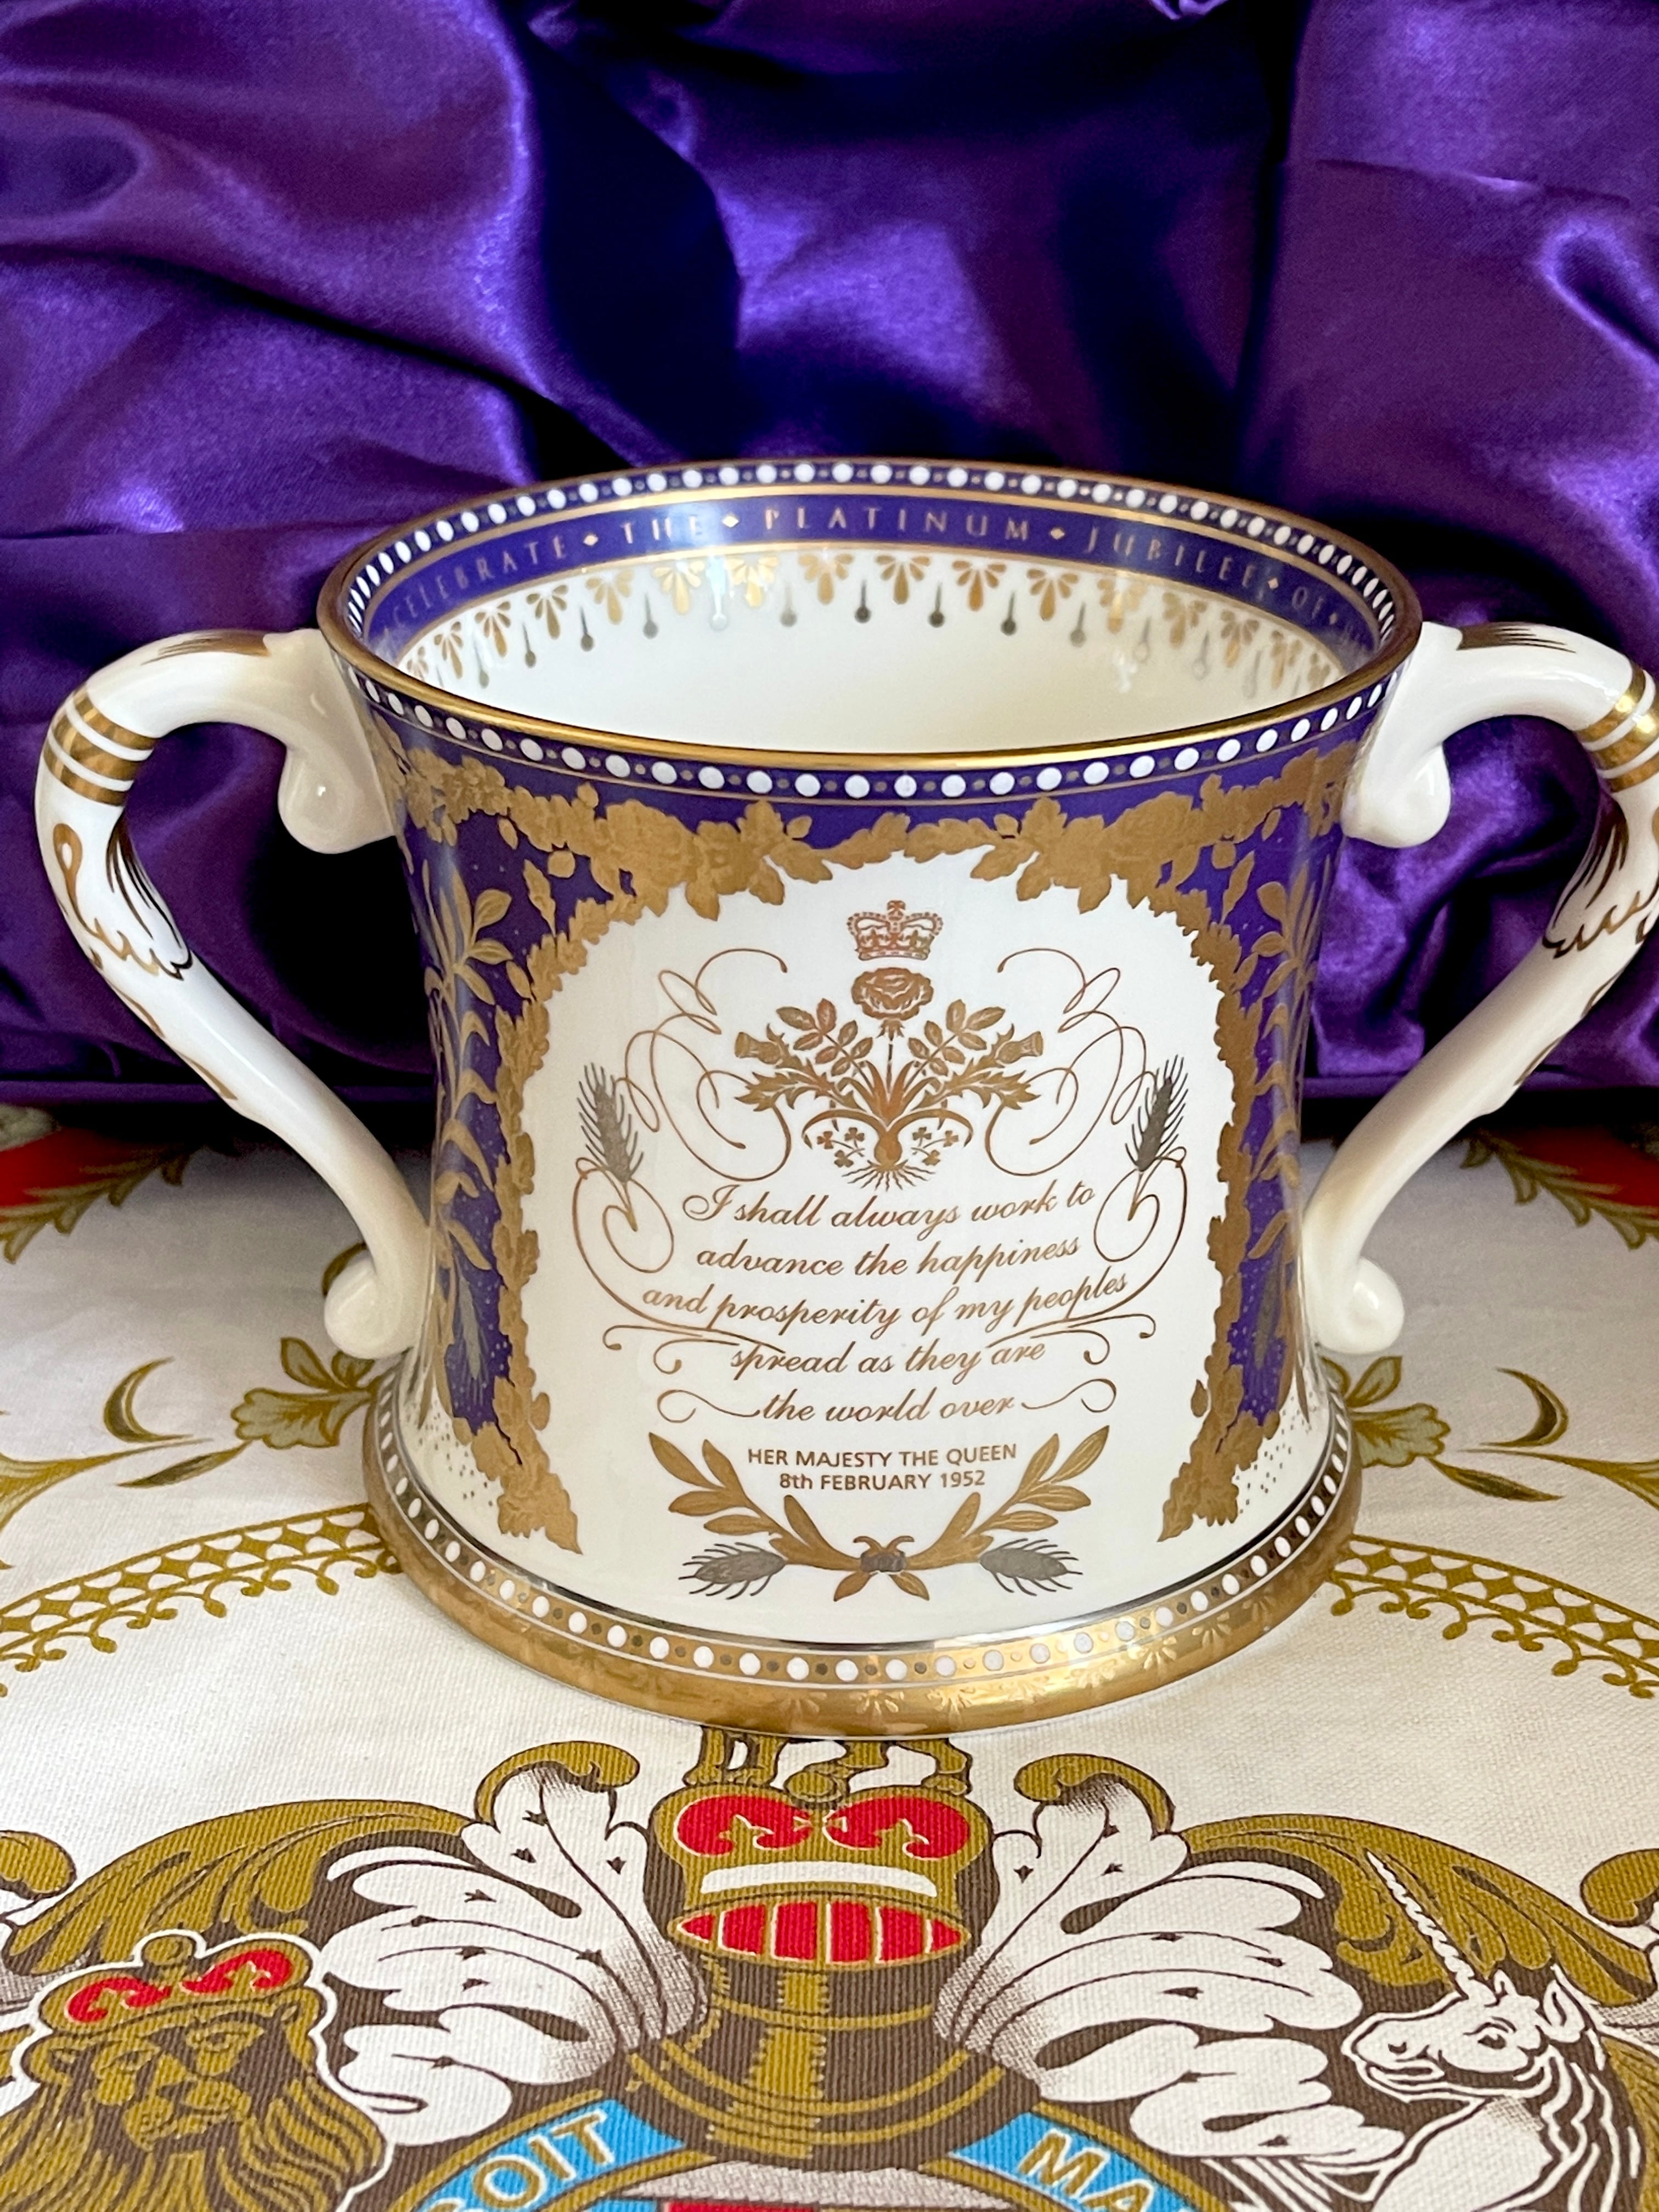 ◆エリザベス女王 70th記念  リミテッドエディション プラチナジュビリー  The Queen's Platinum Jubilee Loving Cup Limited Edition